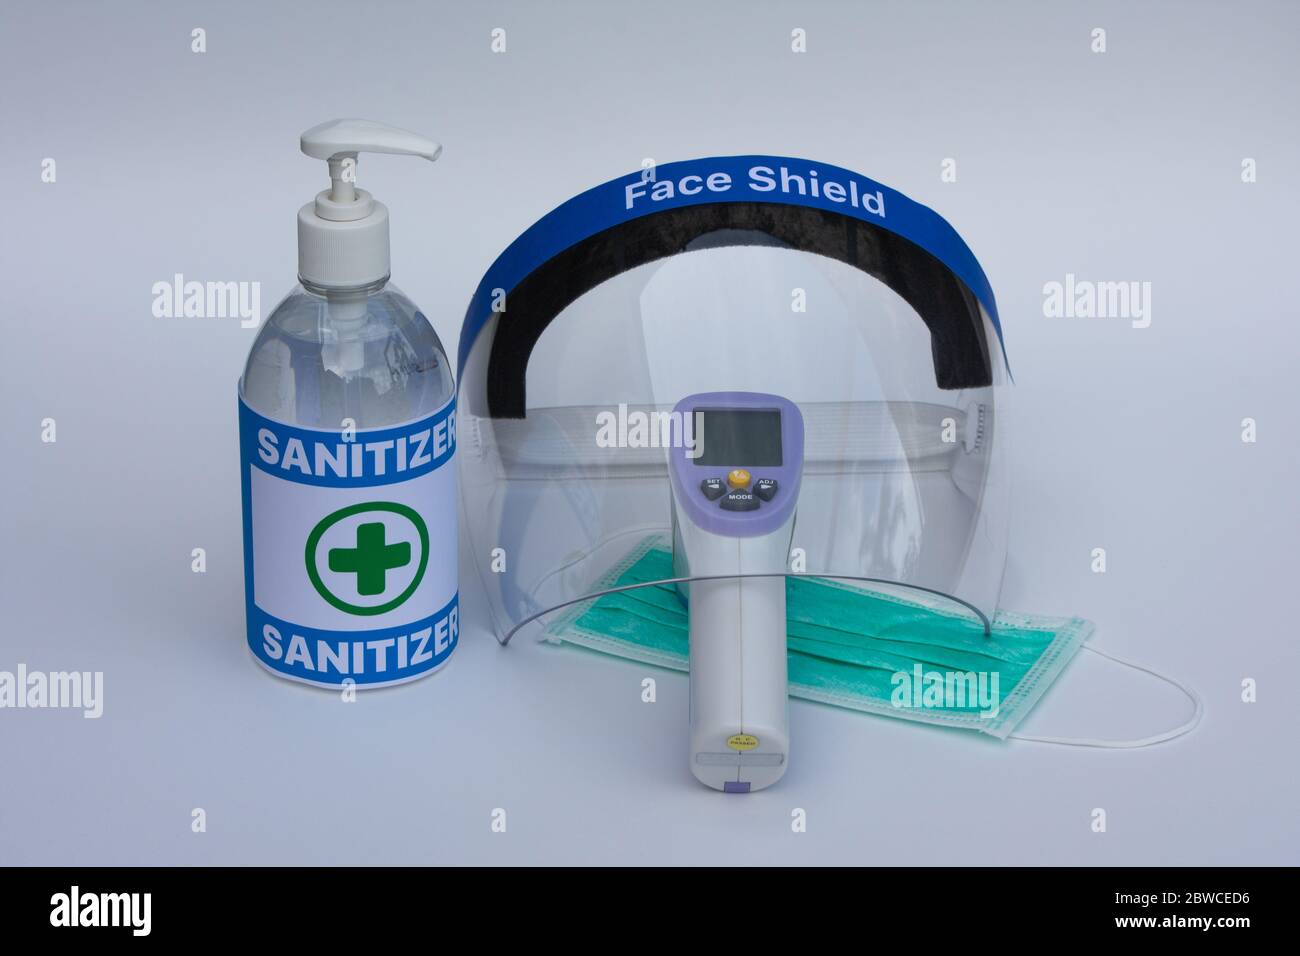 Masque facial, thermomètre infrarouge, masque chirurgical et gel désinfectant pour les mains. Concept de prévention des coronavirus. Banque D'Images